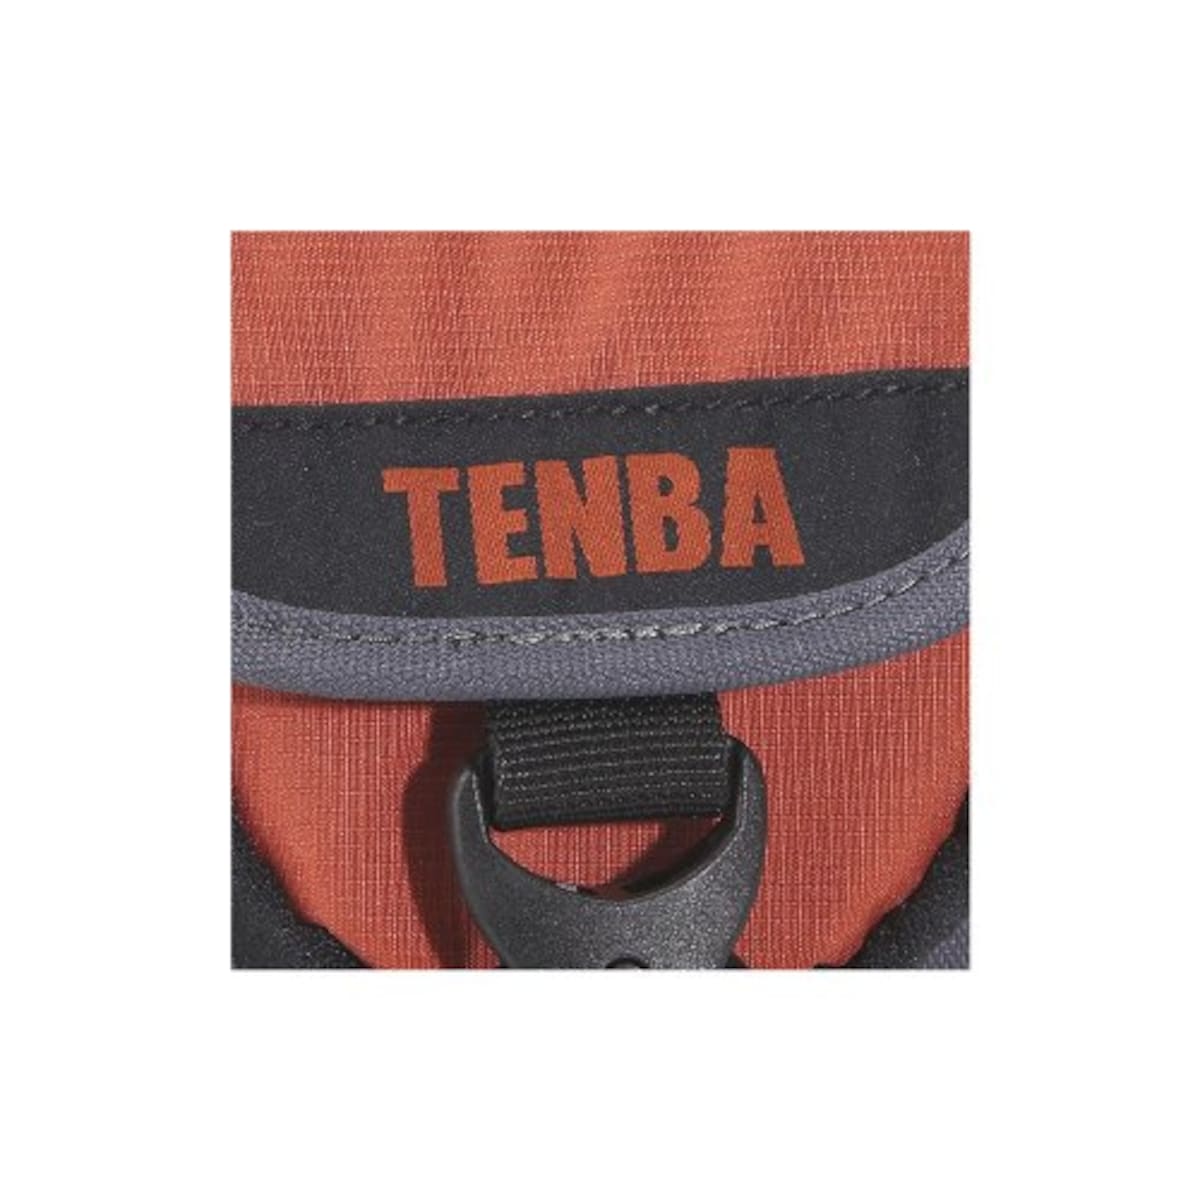  TENBA ショルダーバッグ エクスプレスショルダーバッグS ブラック/赤 638-534画像6 